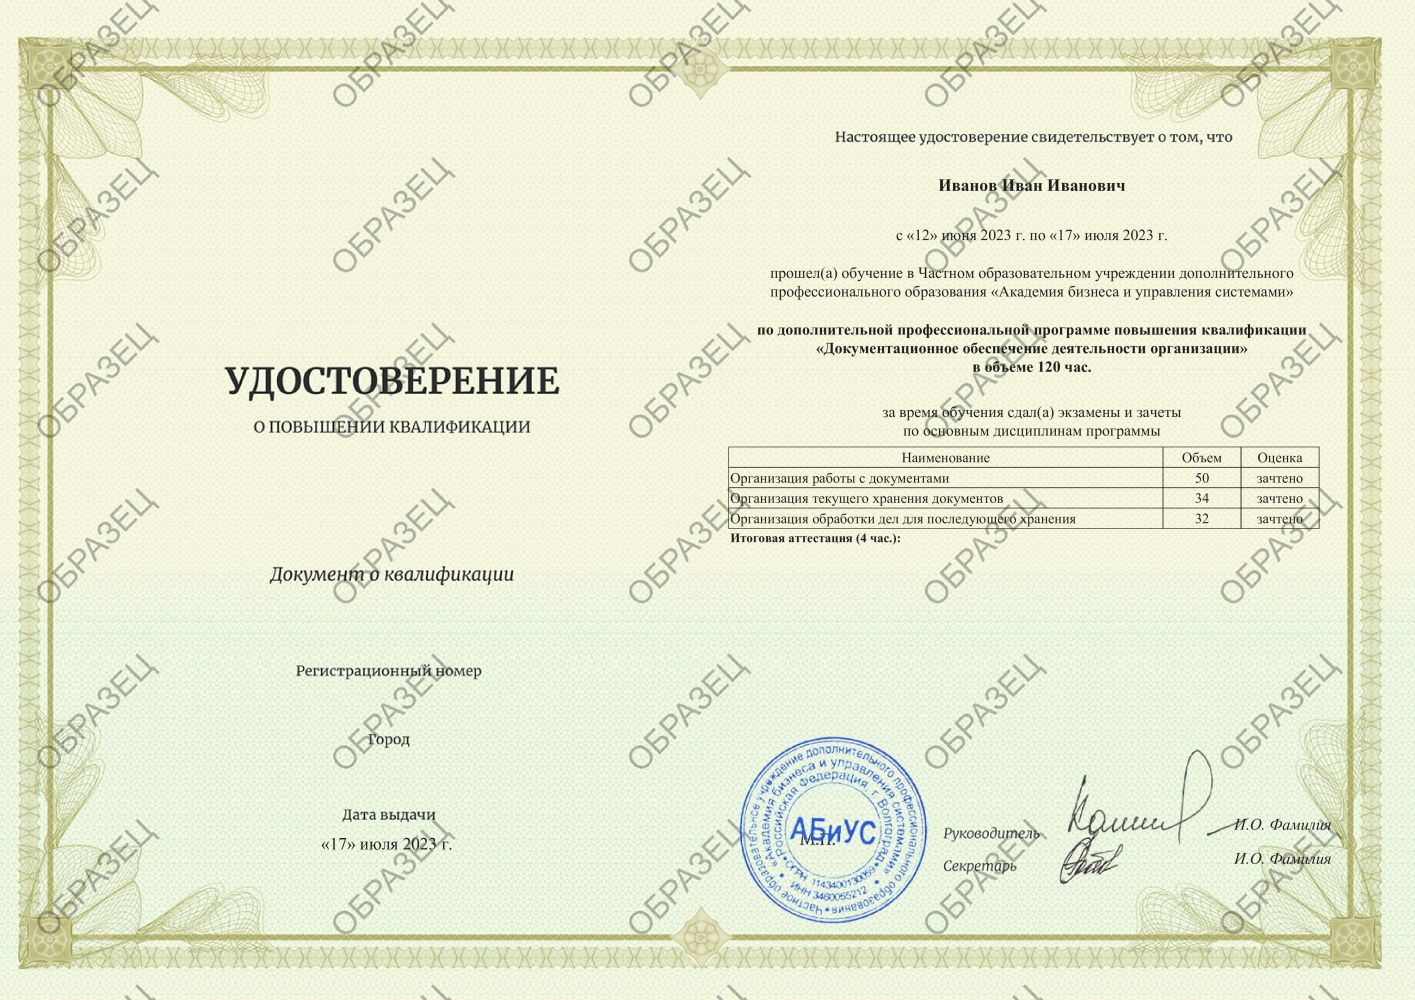 Удостоверение Документационное обеспечение деятельности организации 120 часов 3938 руб.